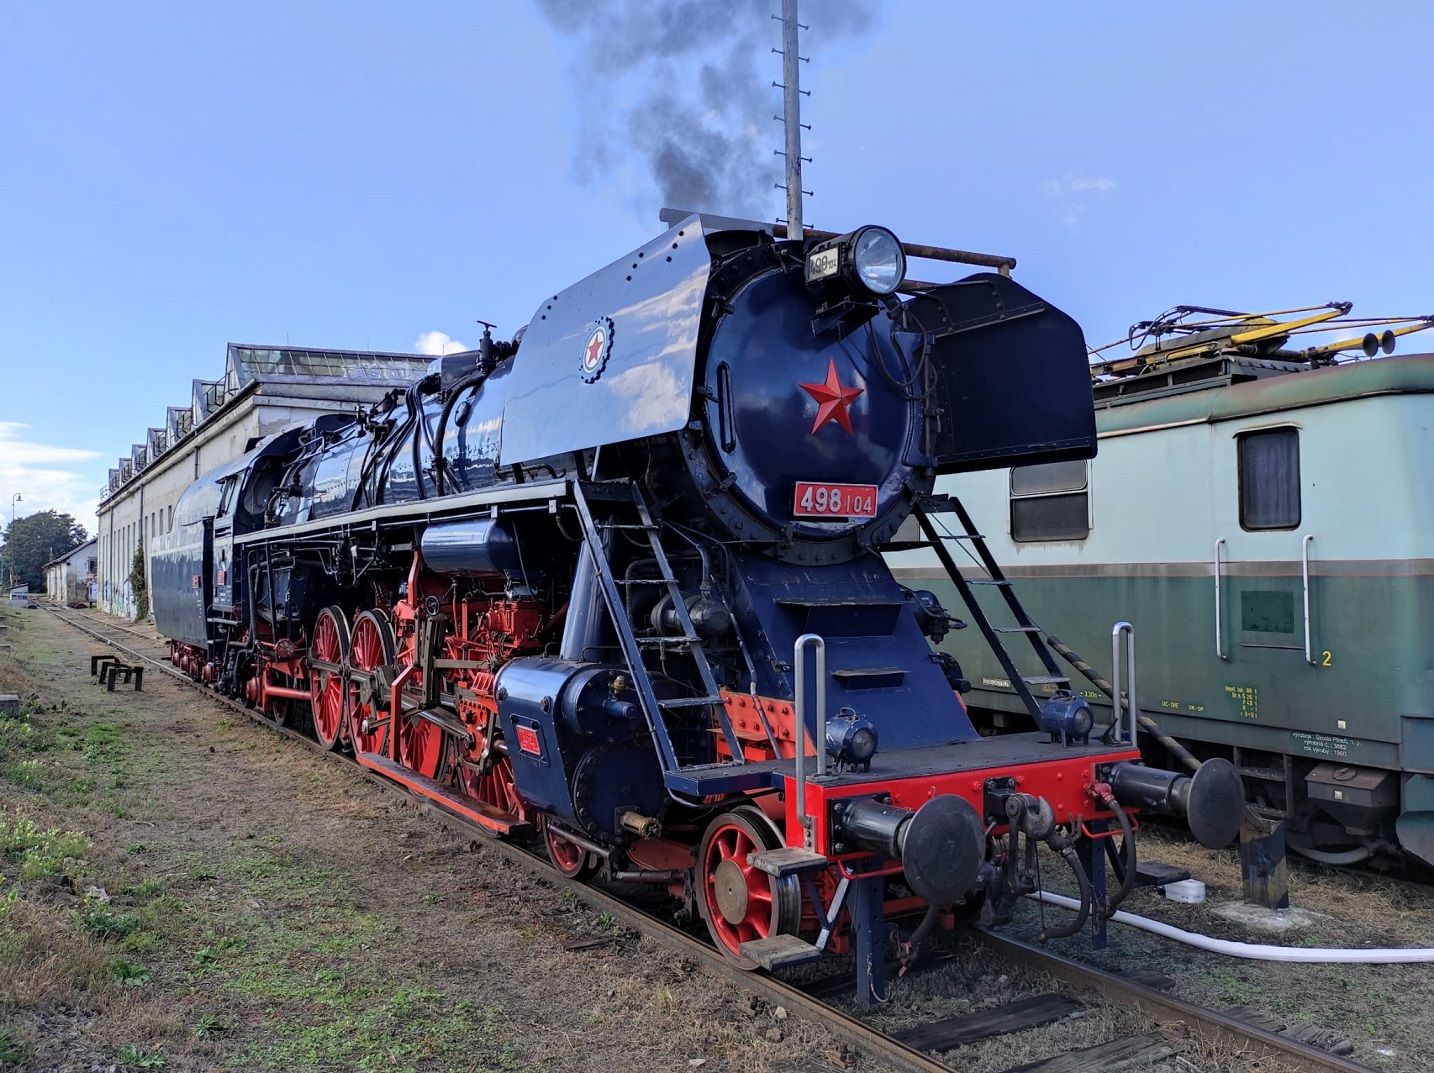 Parní lokomotiva 498.104 Albatros. Pramen: České dráhy